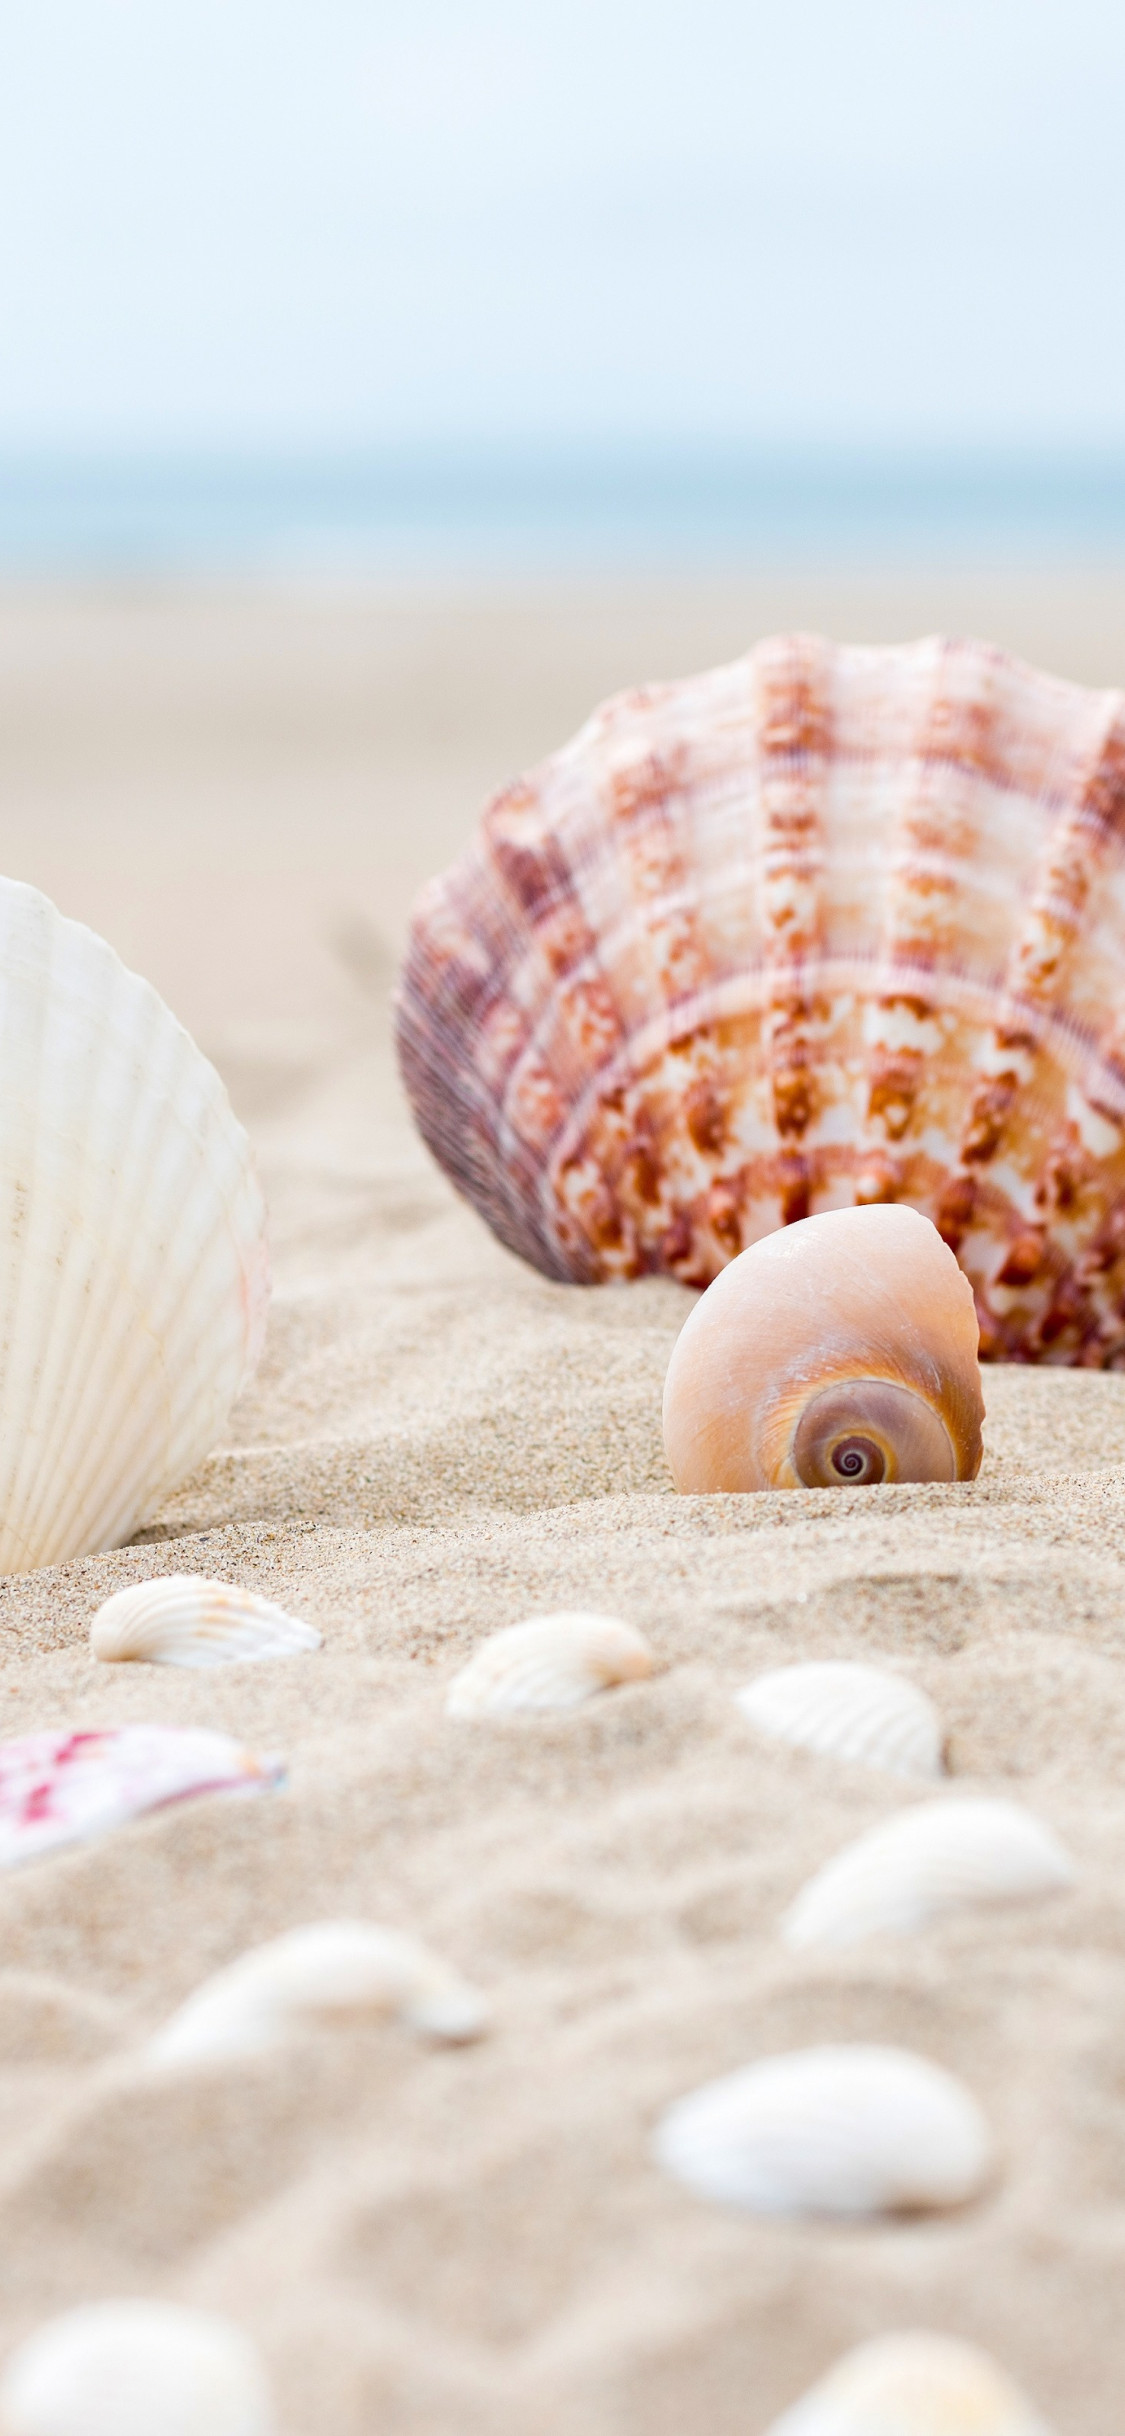 Shells on the ocean beach wallpaper 1125x2436